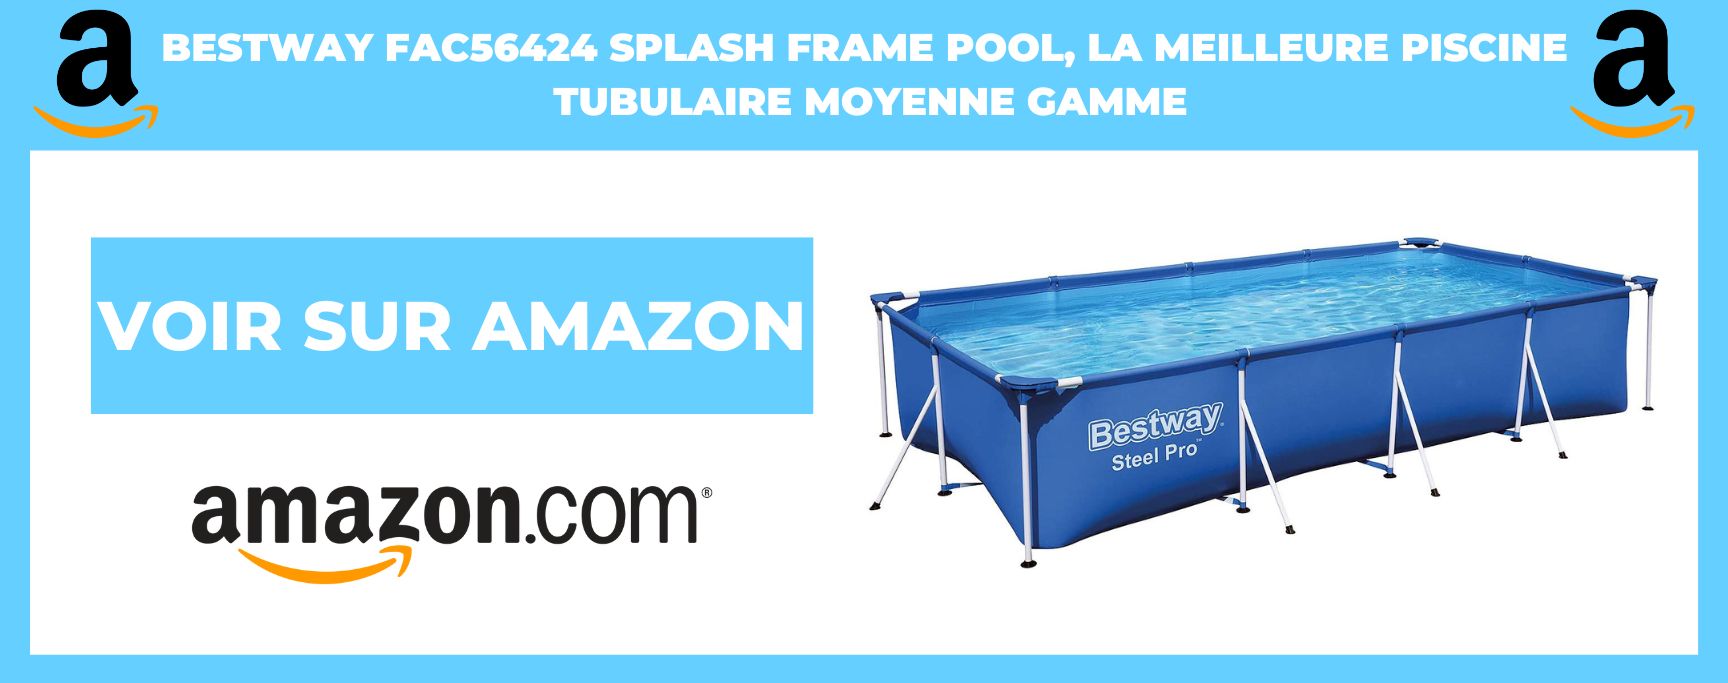 BESTWAY FAC56424 splash frame pool